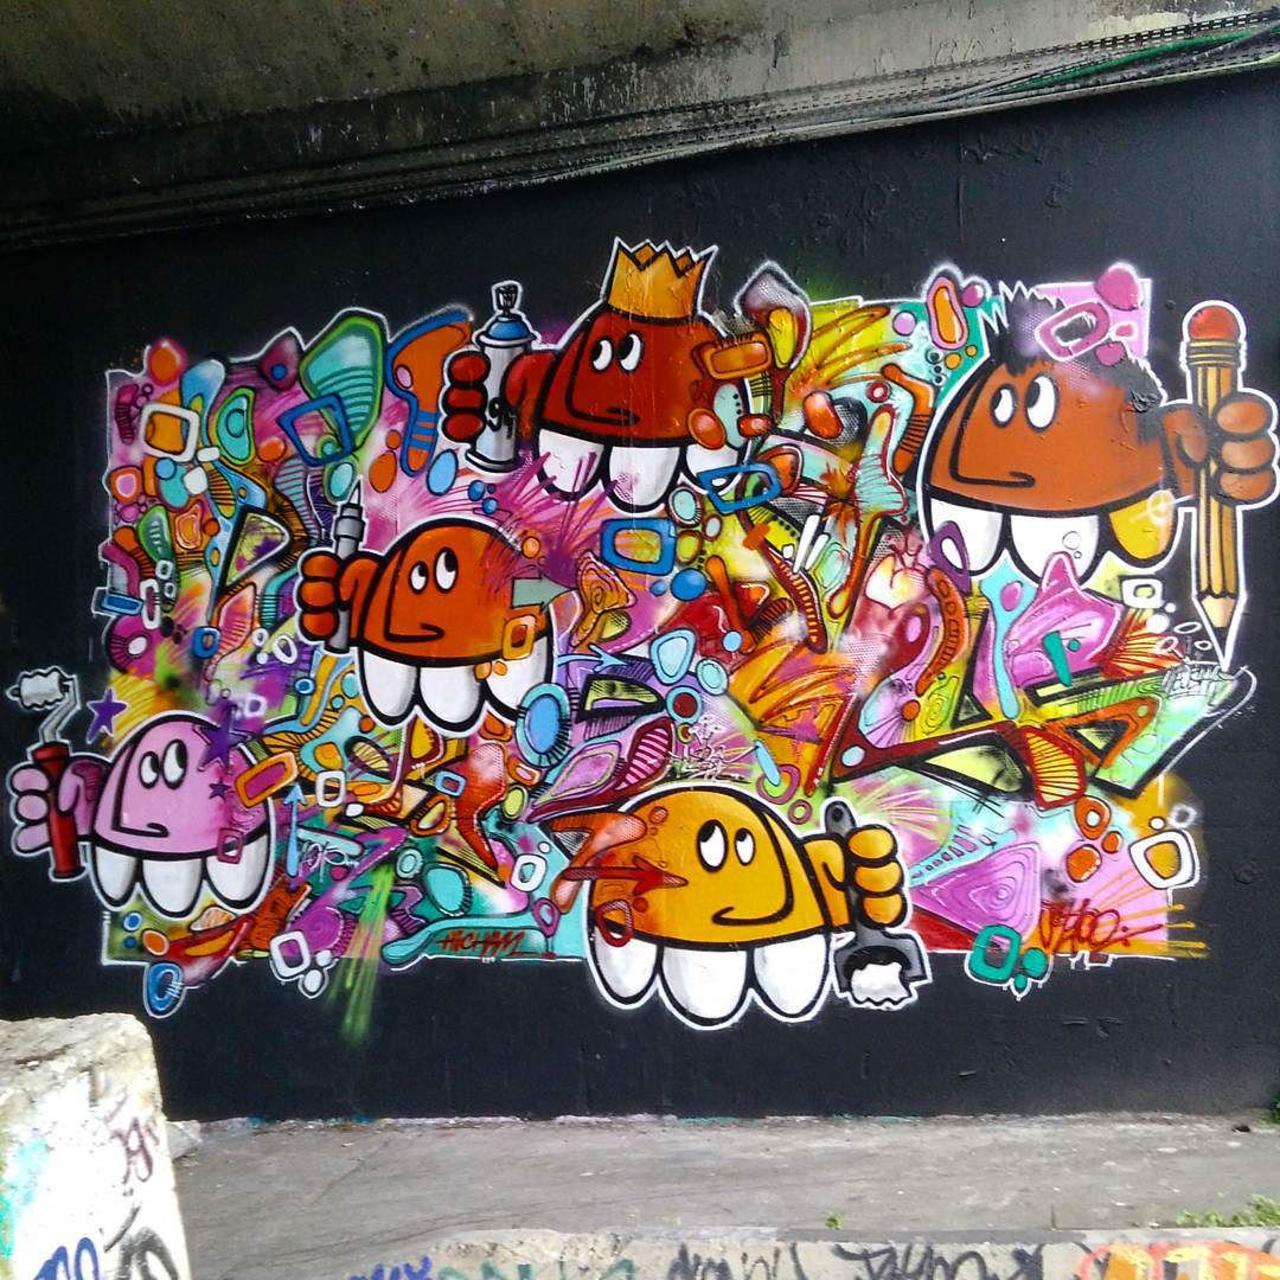 #Paris #graffiti photo by @ceky_art http://ift.tt/1RJPI0w #StreetArt http://t.co/VUHmpPUA5f